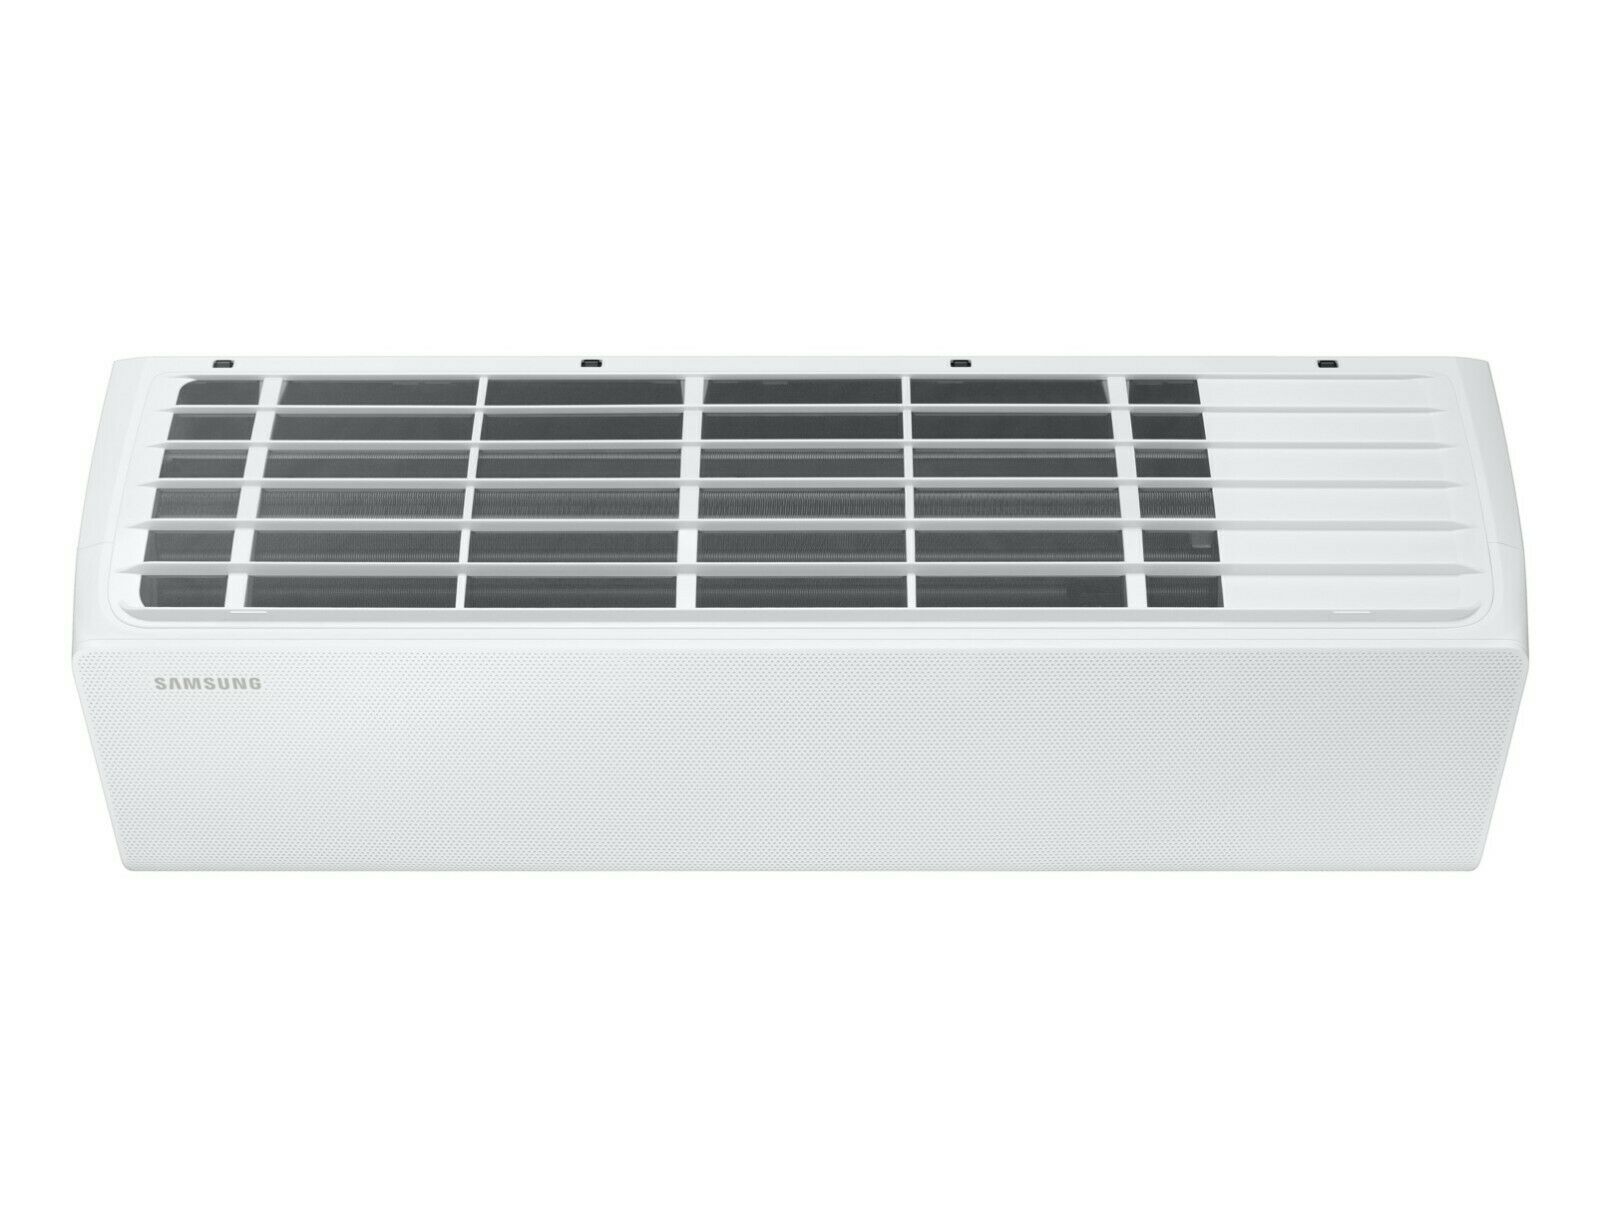 Samsung Multisplit Klimaanlage Herbstaktion 3 Innengeräte 1 Außengerät  inklusive Montage und Inbetriebnahme